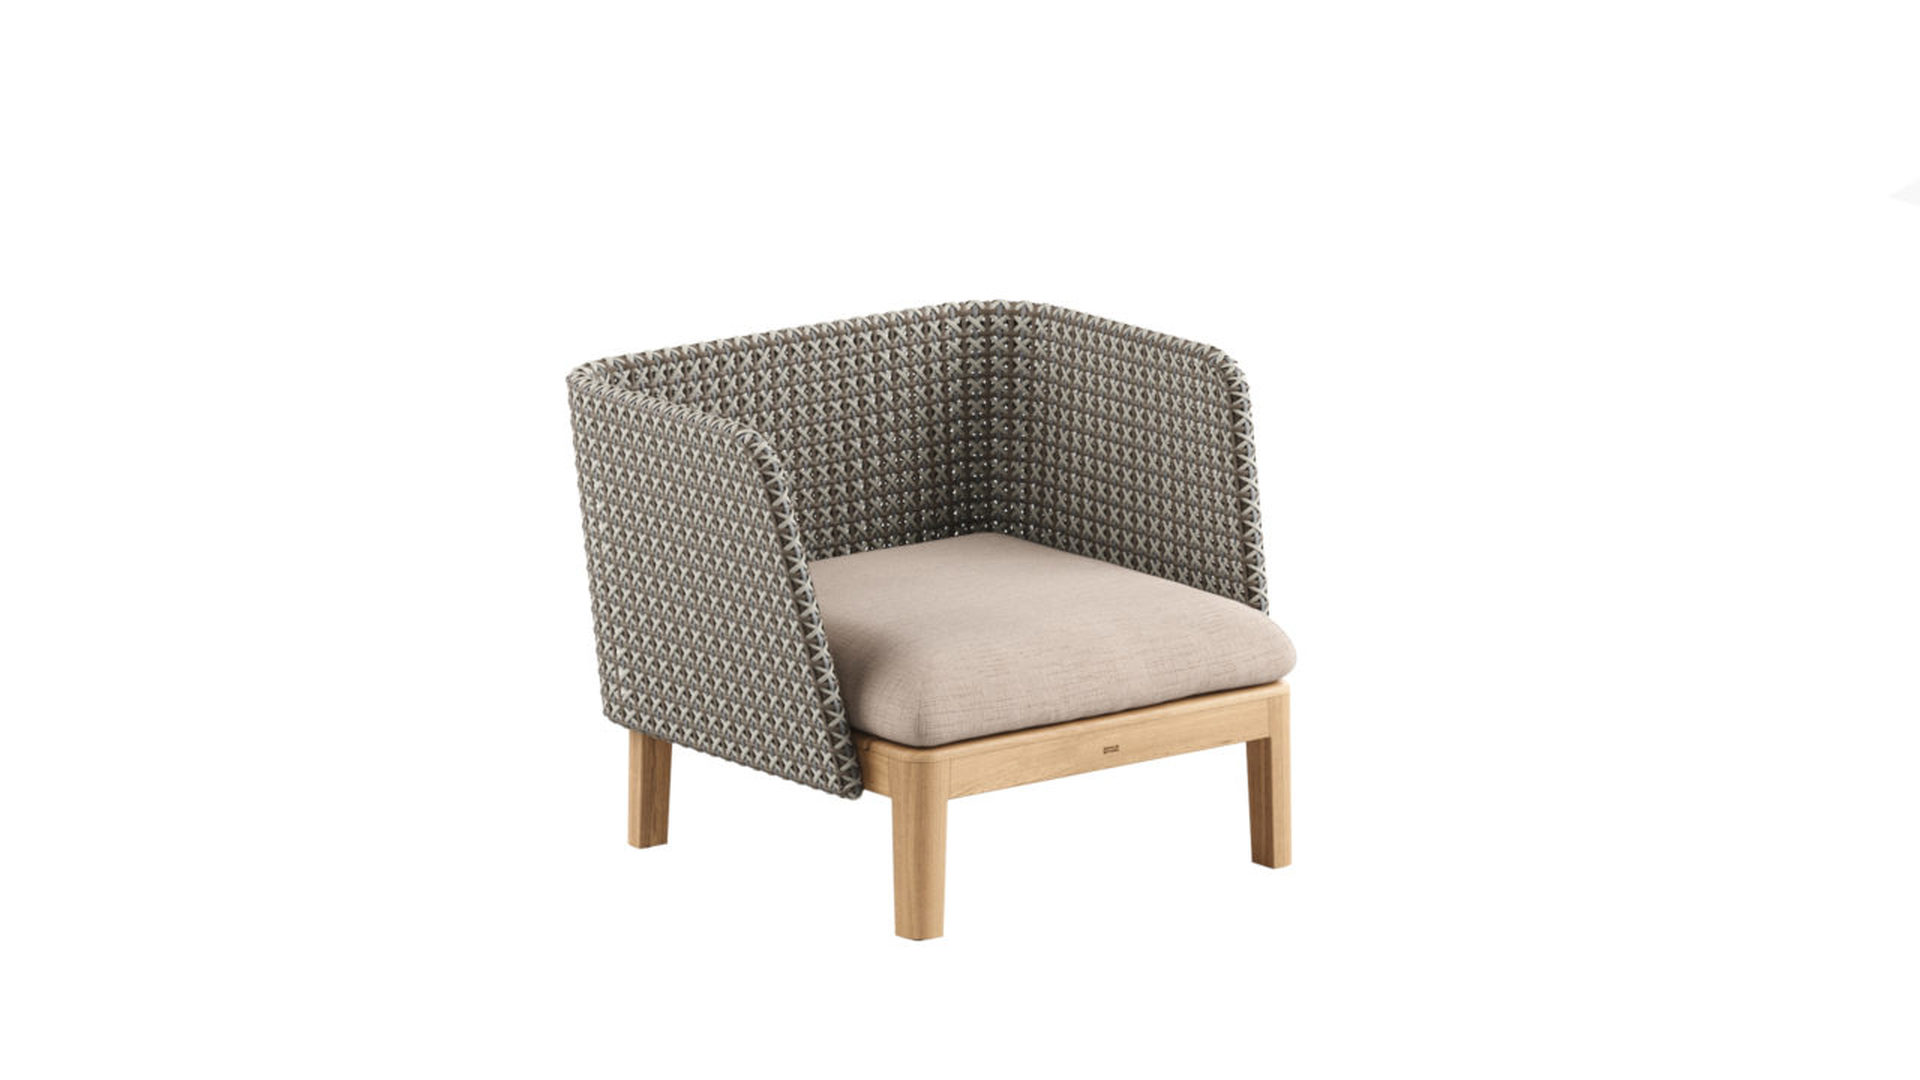 Royal Botania Calypso Lounge armchair fauteuil stoel modulaire bank outdoor HORA Barneveld 1.jpg